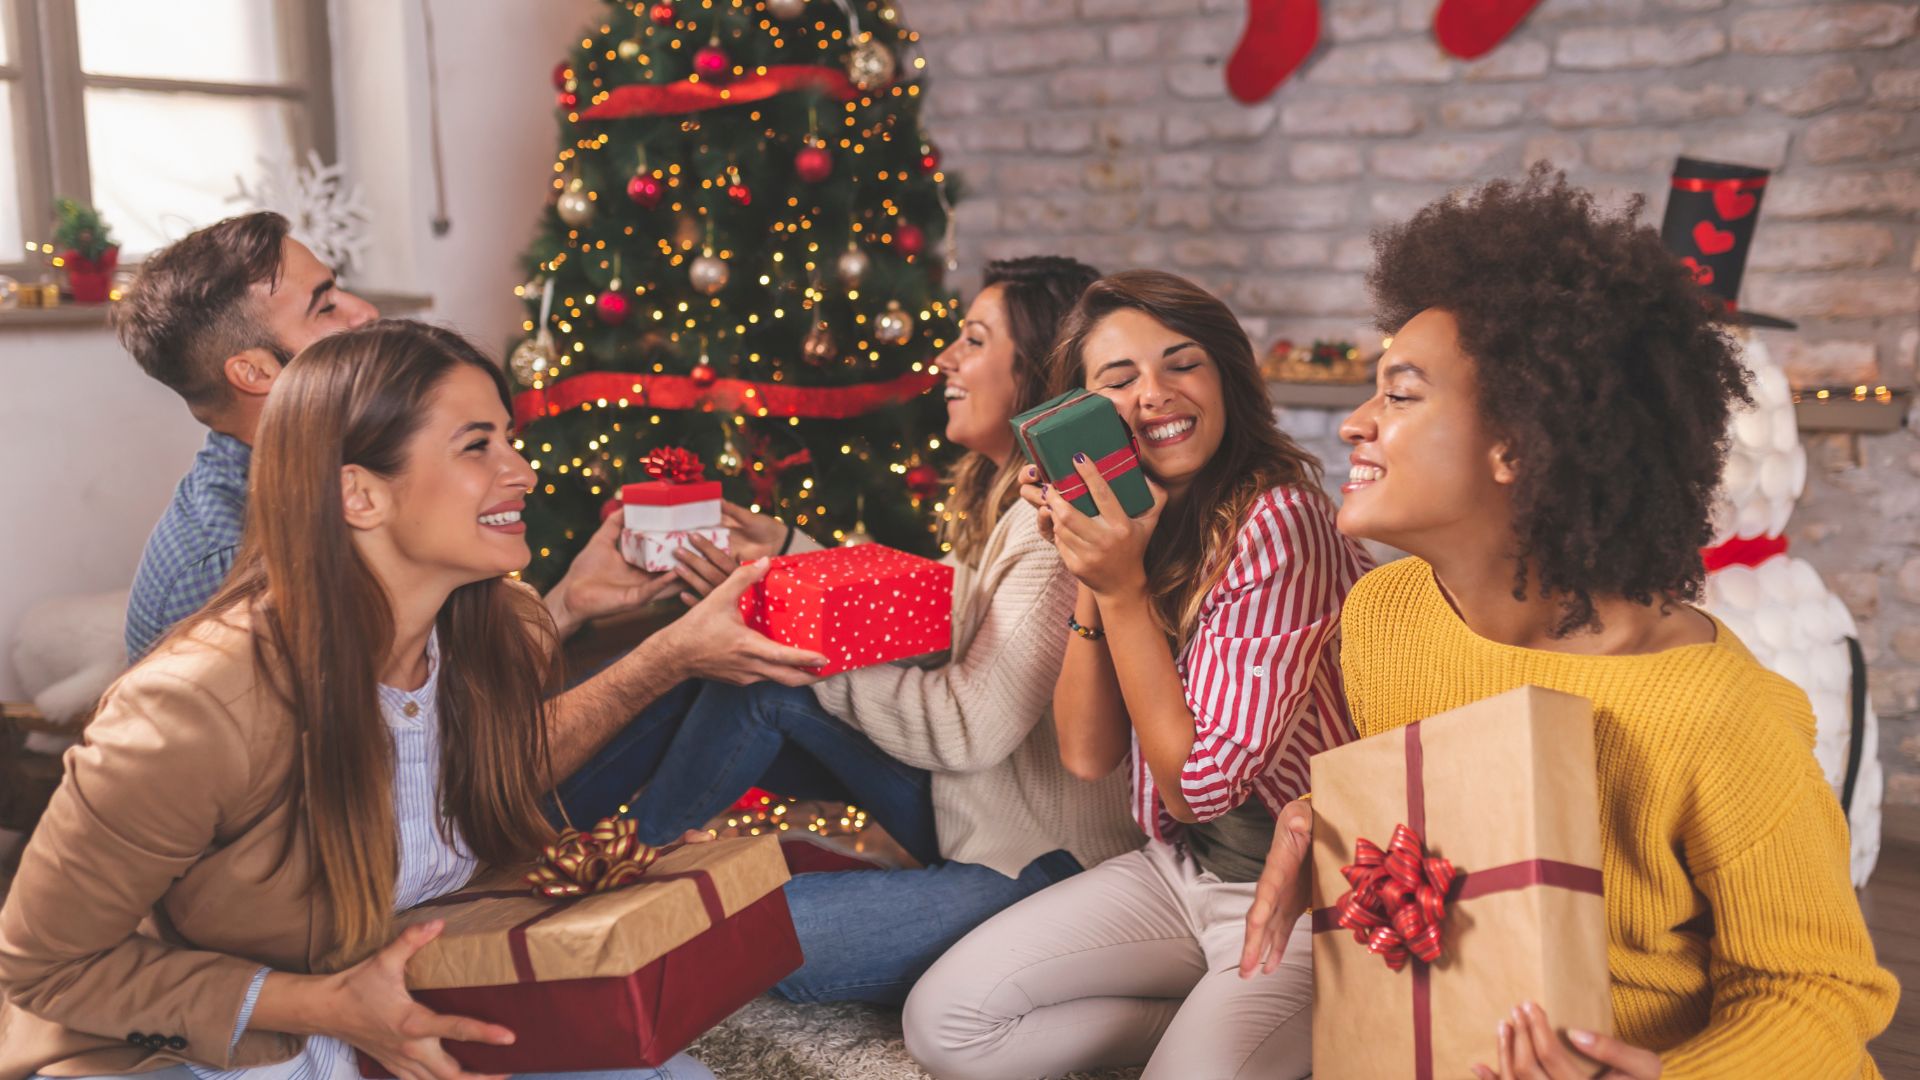 Imagem de várias pessoas felizes e sorridentes sentadas no chão trocando presentes de Natal. Ao fundo uma linda árvore decorada com enfeites natalinos.